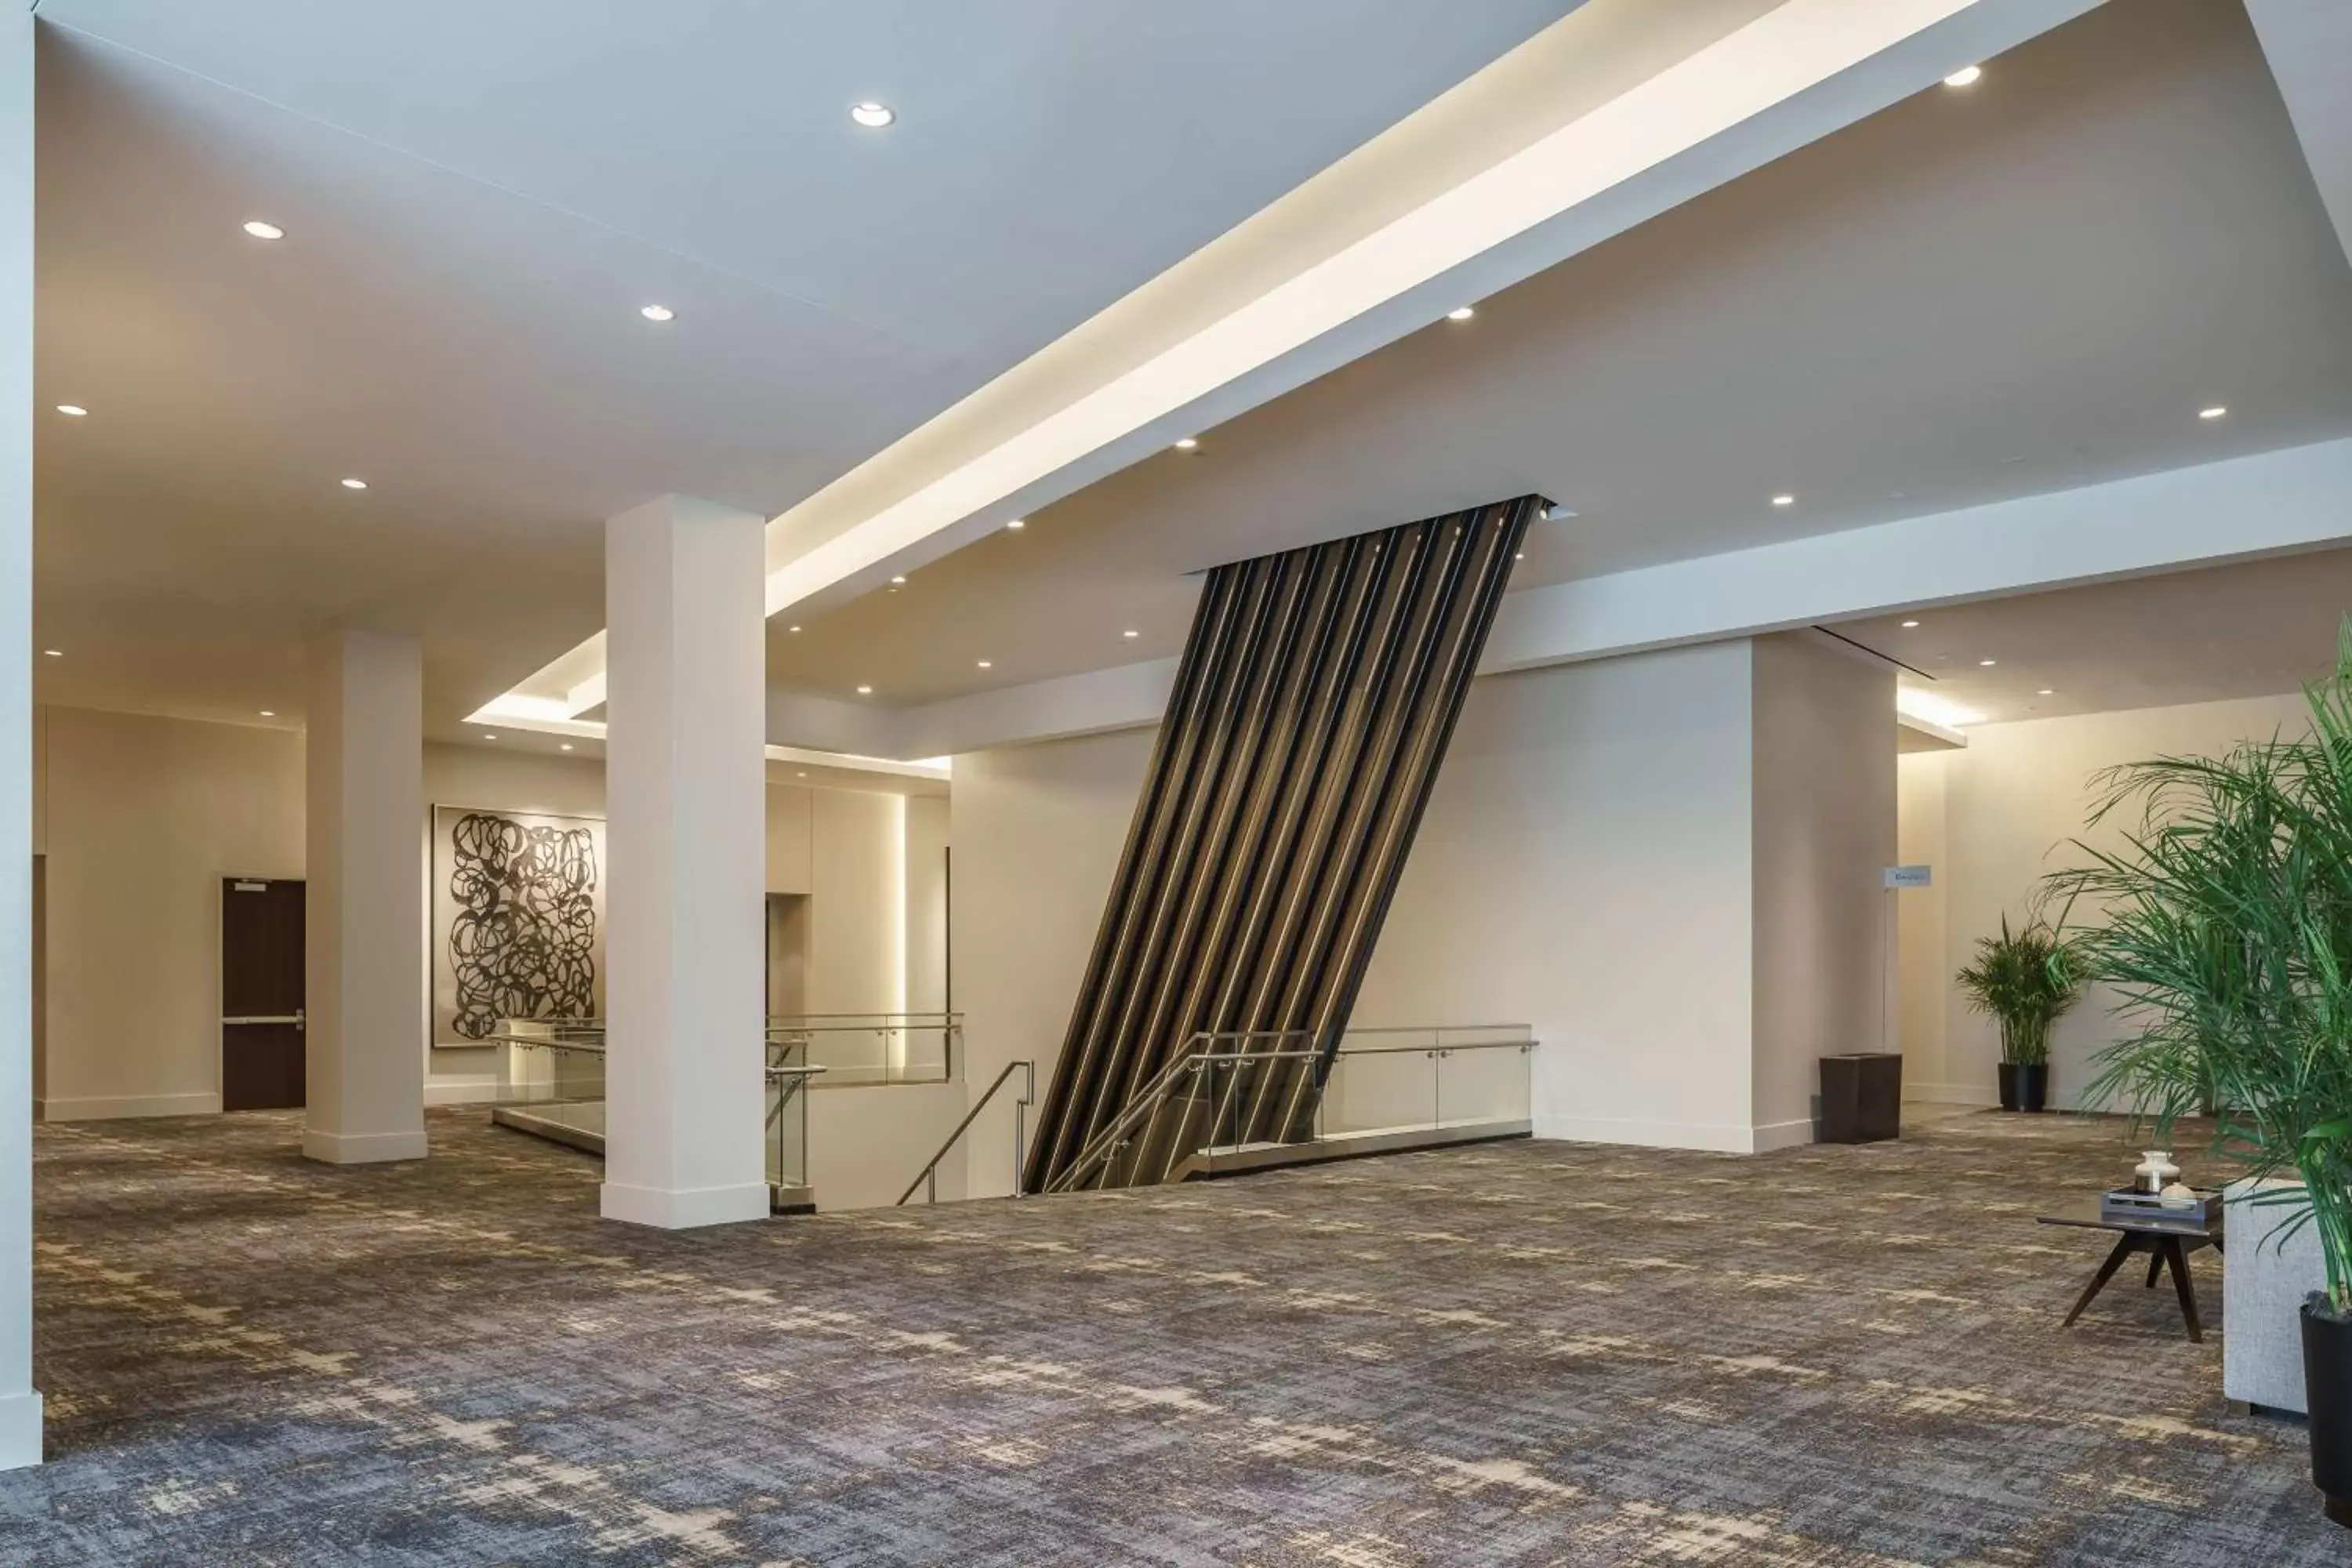 Lobby or reception, Lobby/Reception in Hyatt Regency Houston Galleria